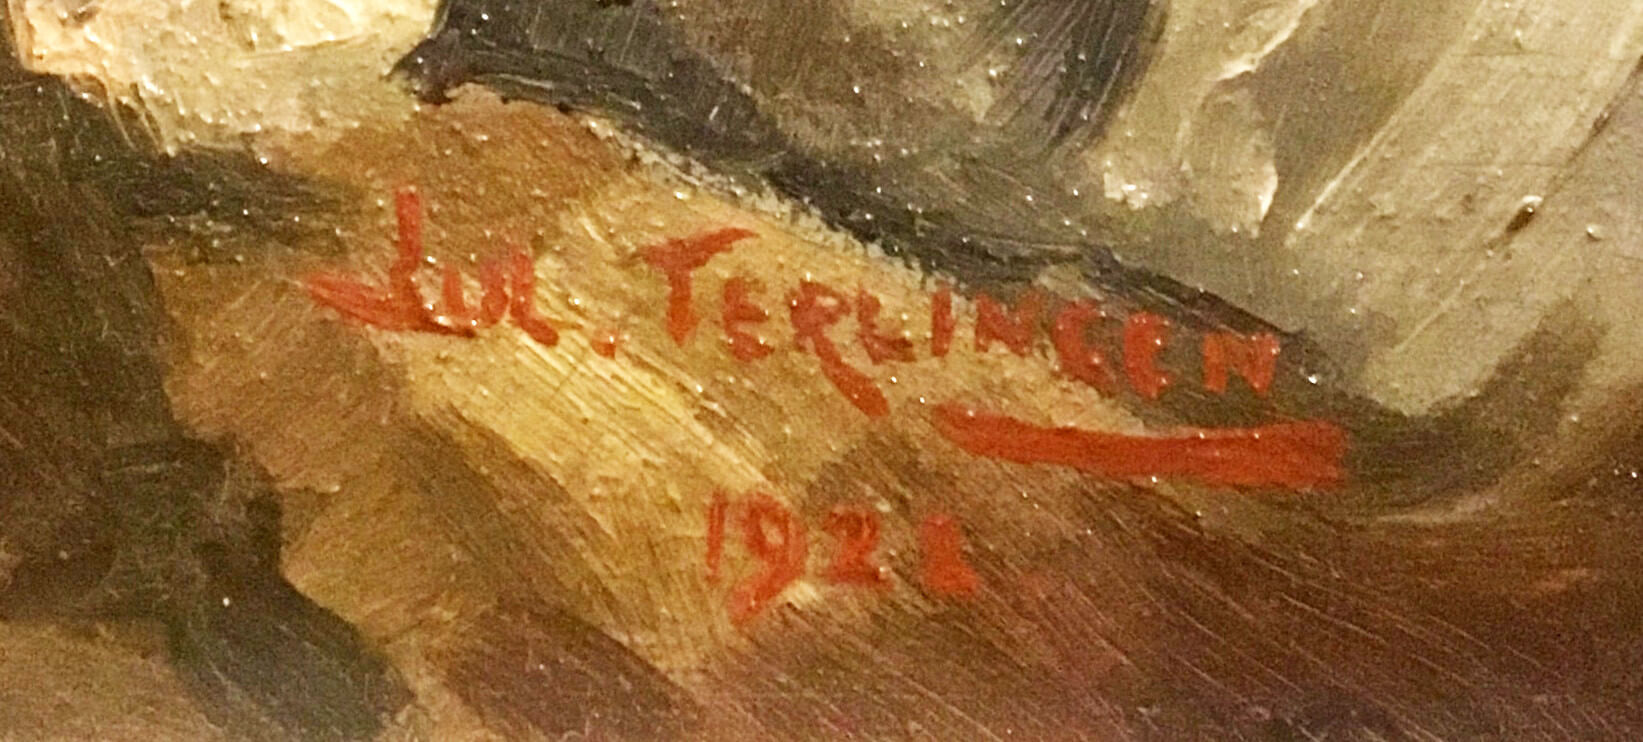 'Jul. Terlingen, 1922' staat rechts onderaan het schilderij.